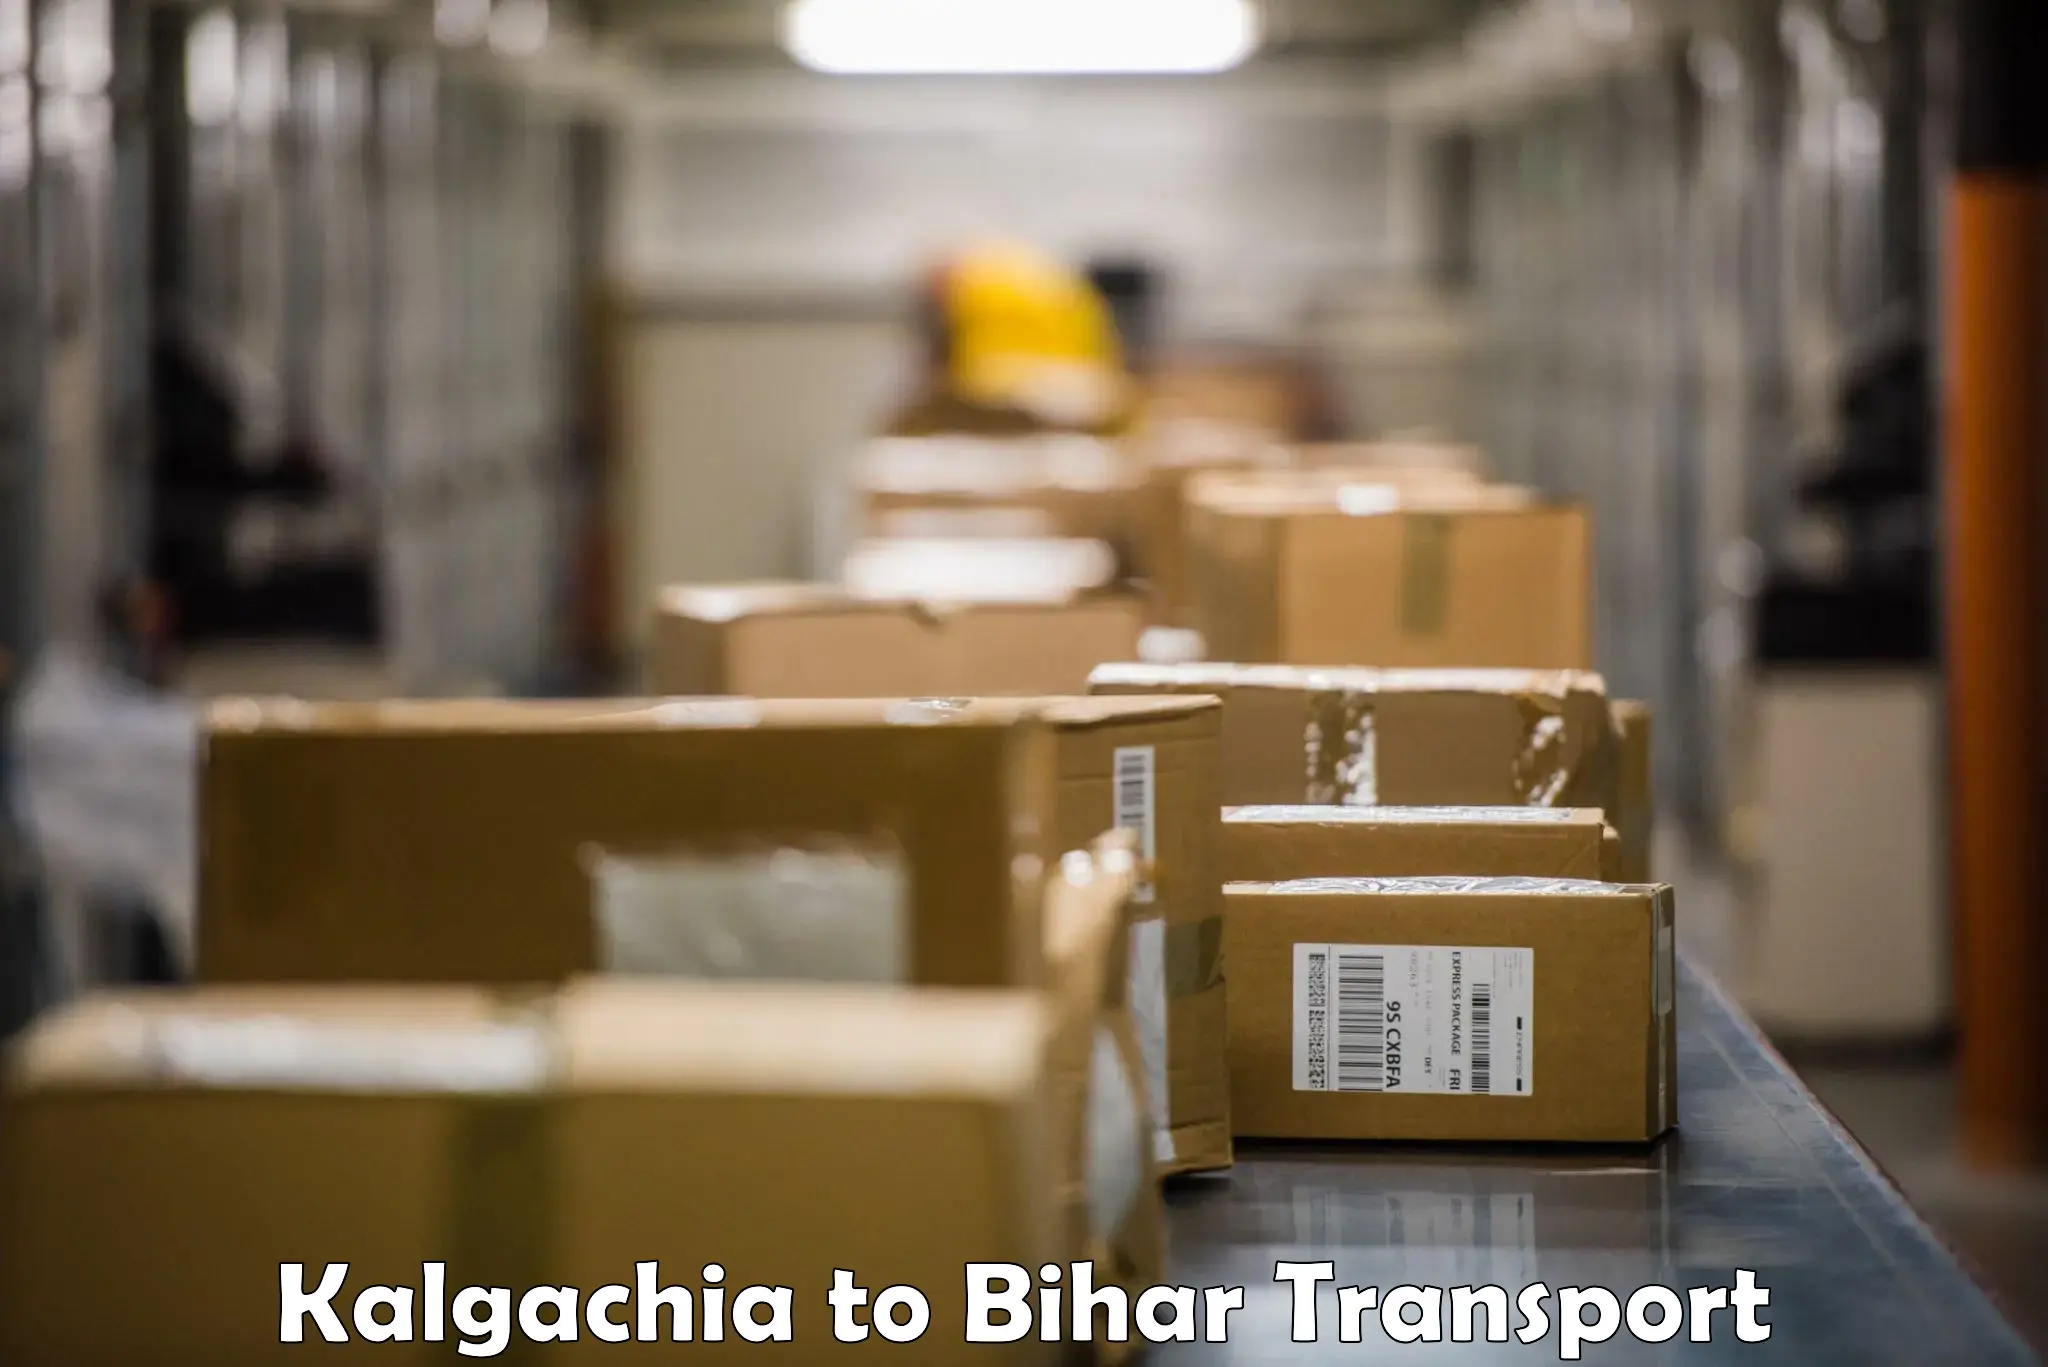 Cargo transport services Kalgachia to Kamtaul